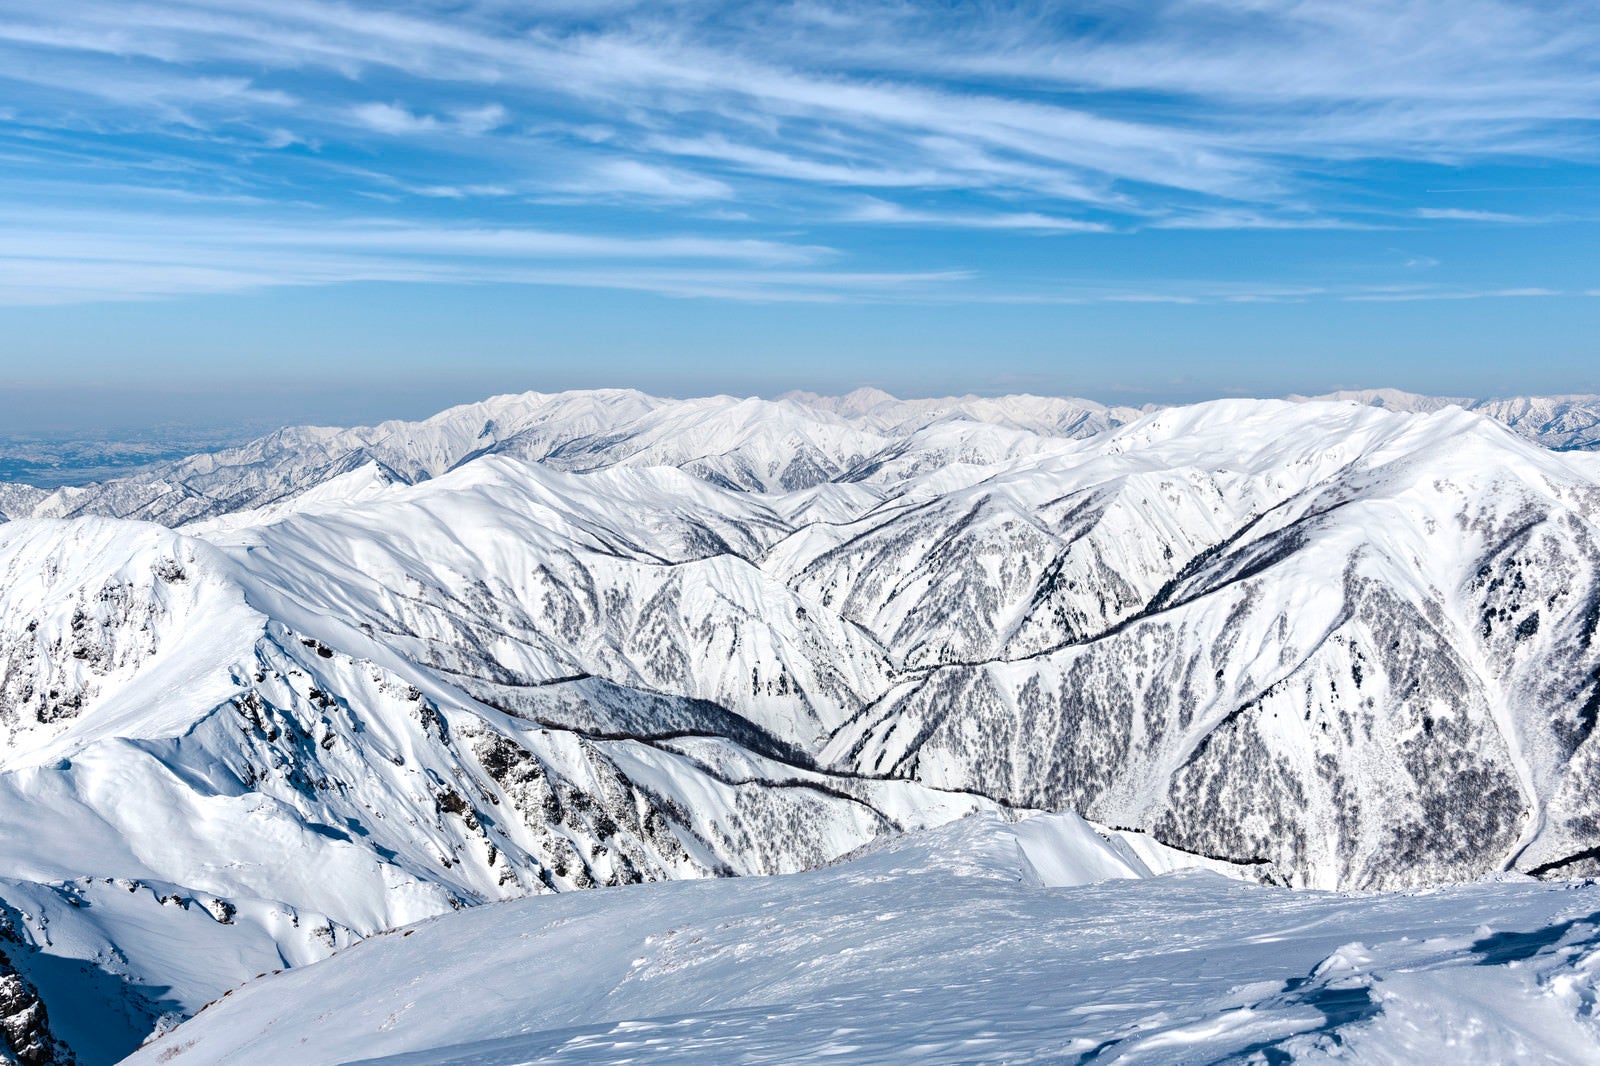 「一ノ倉岳から見る上越の山々」の写真